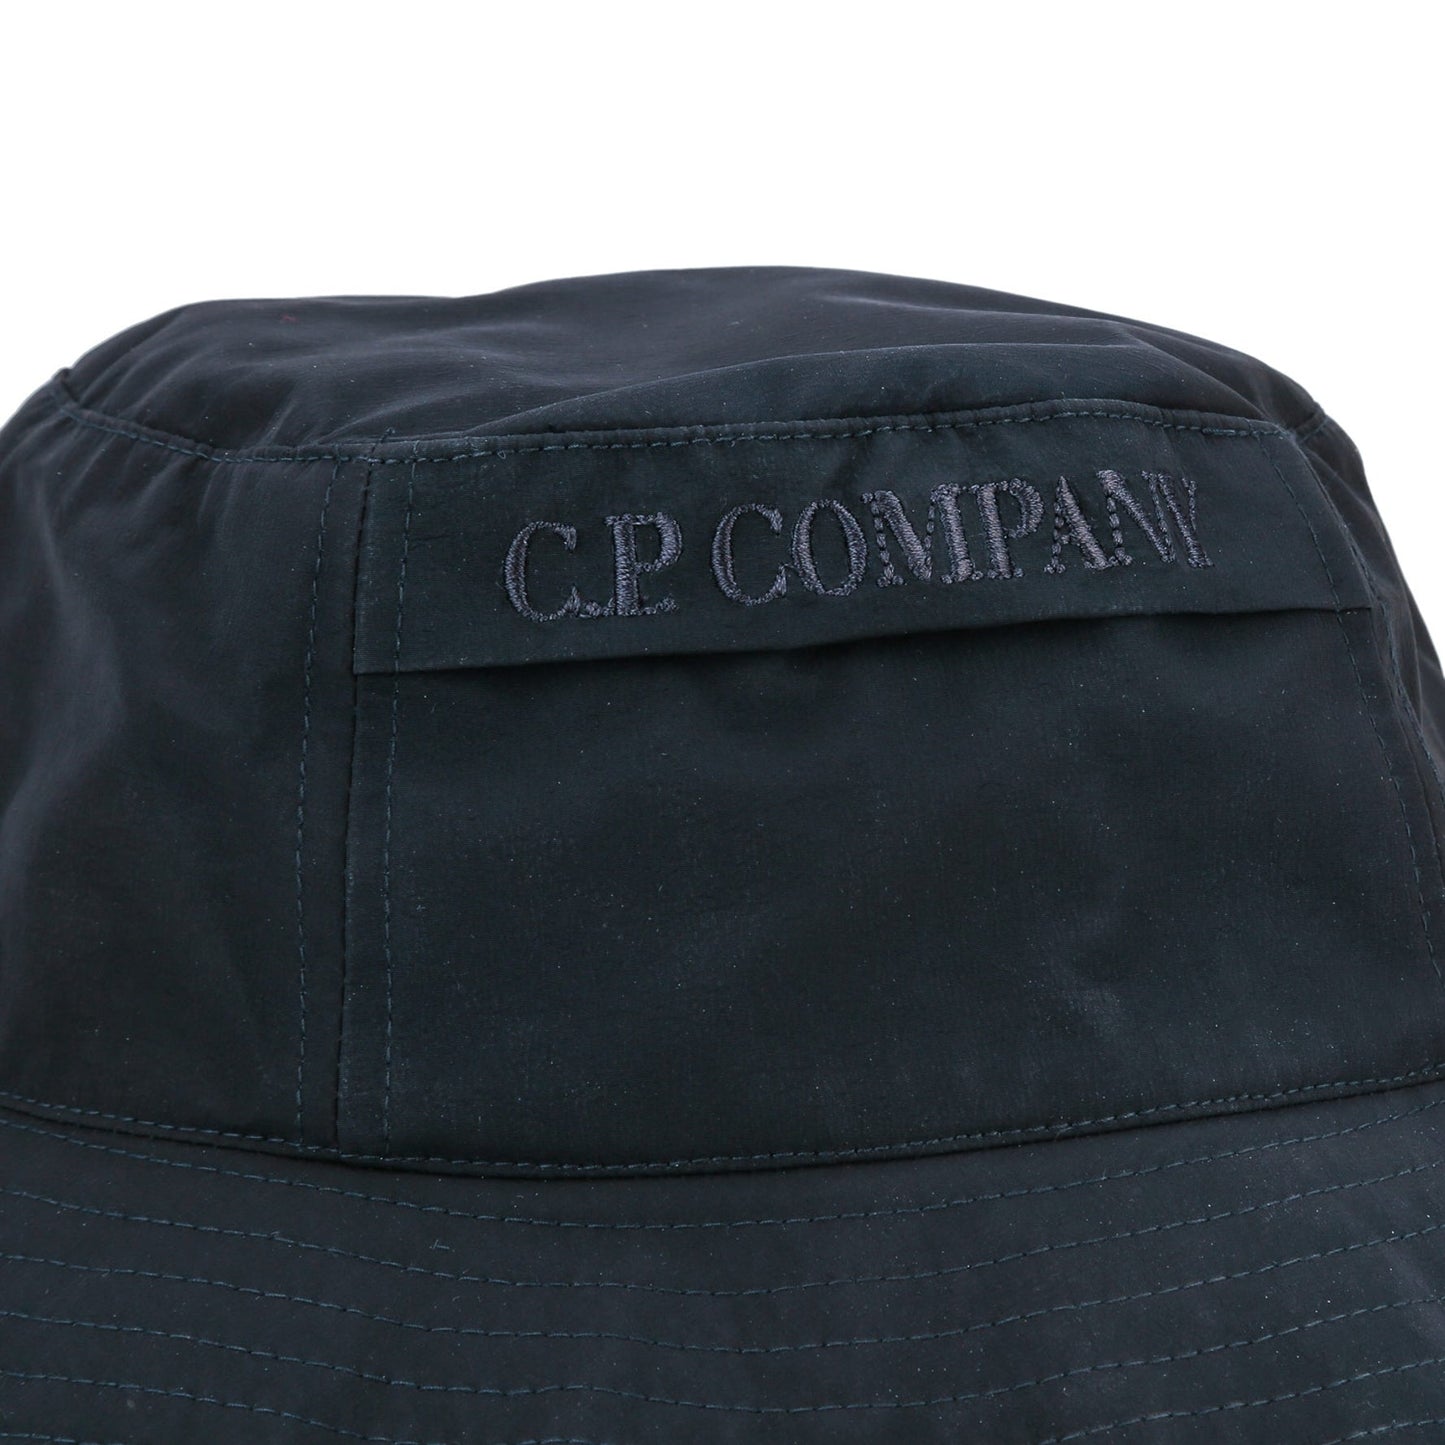 CP Company MAC206A CR Bucket Hats - 888 Navy - Escape Menswear